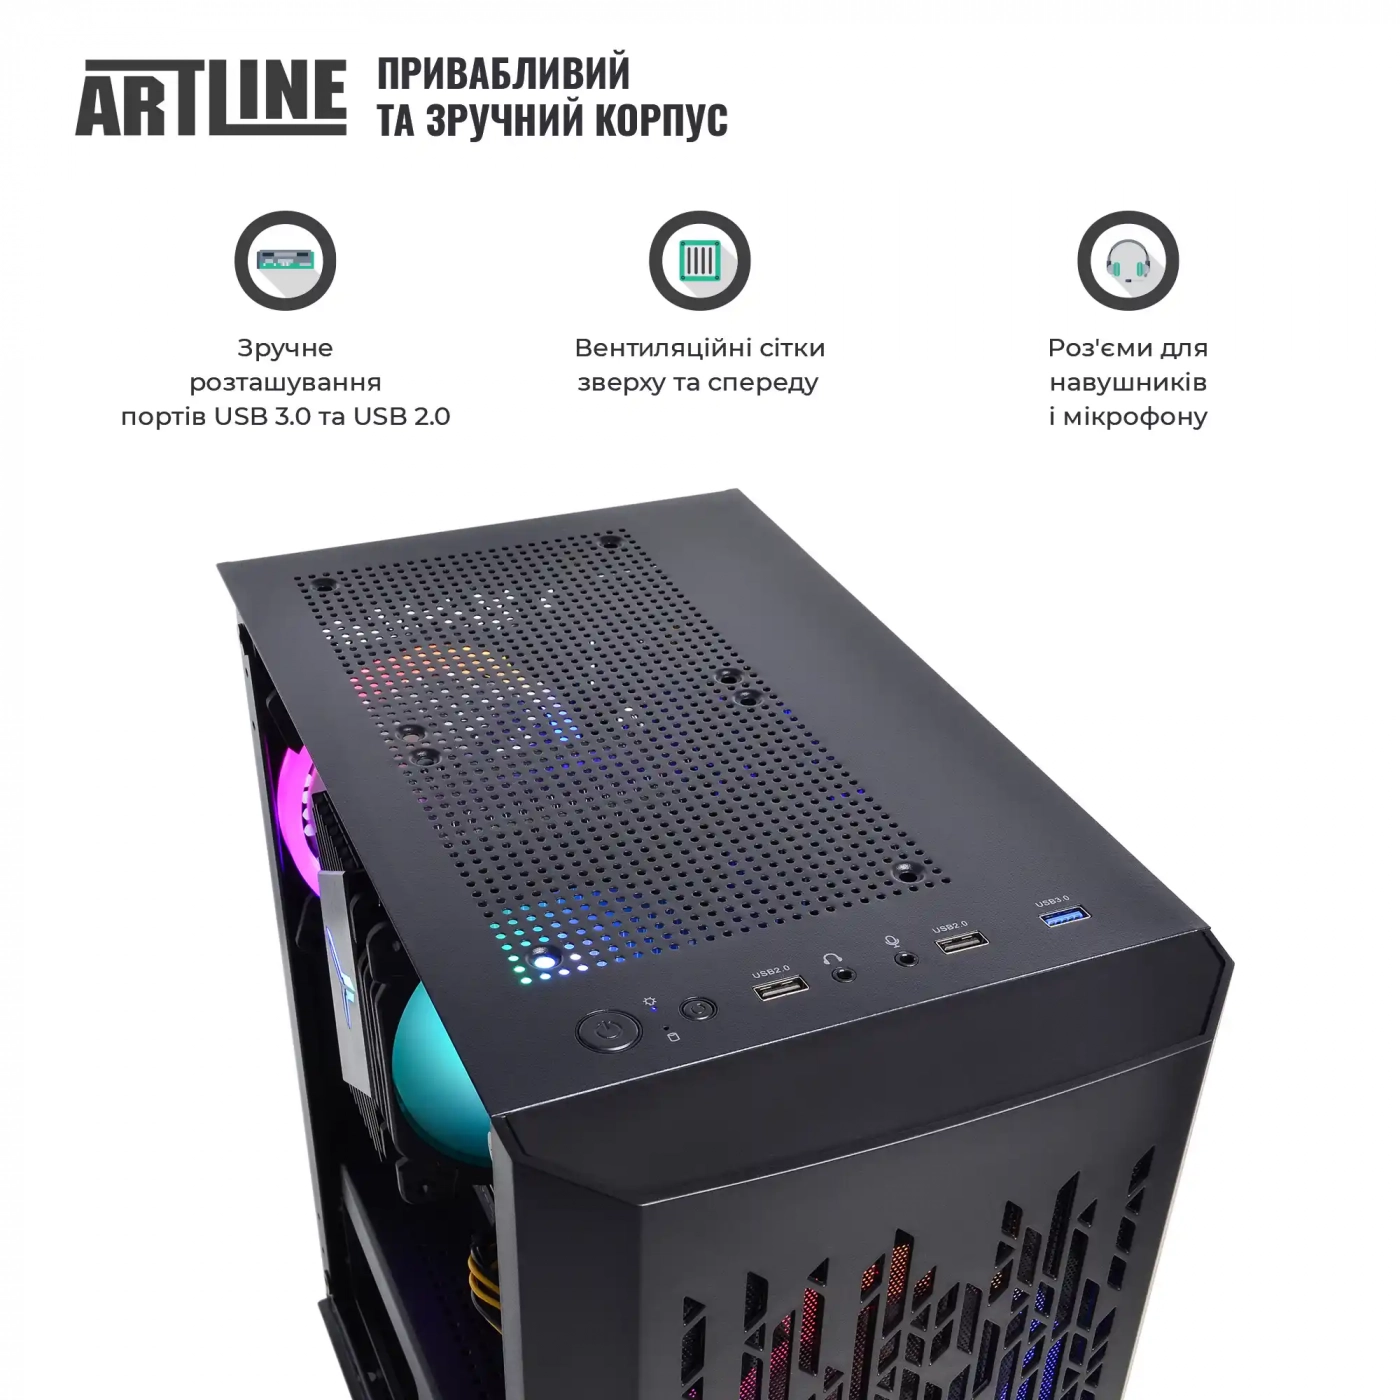 Купить Компьютер ARTLINE Gaming X43v36 - фото 4